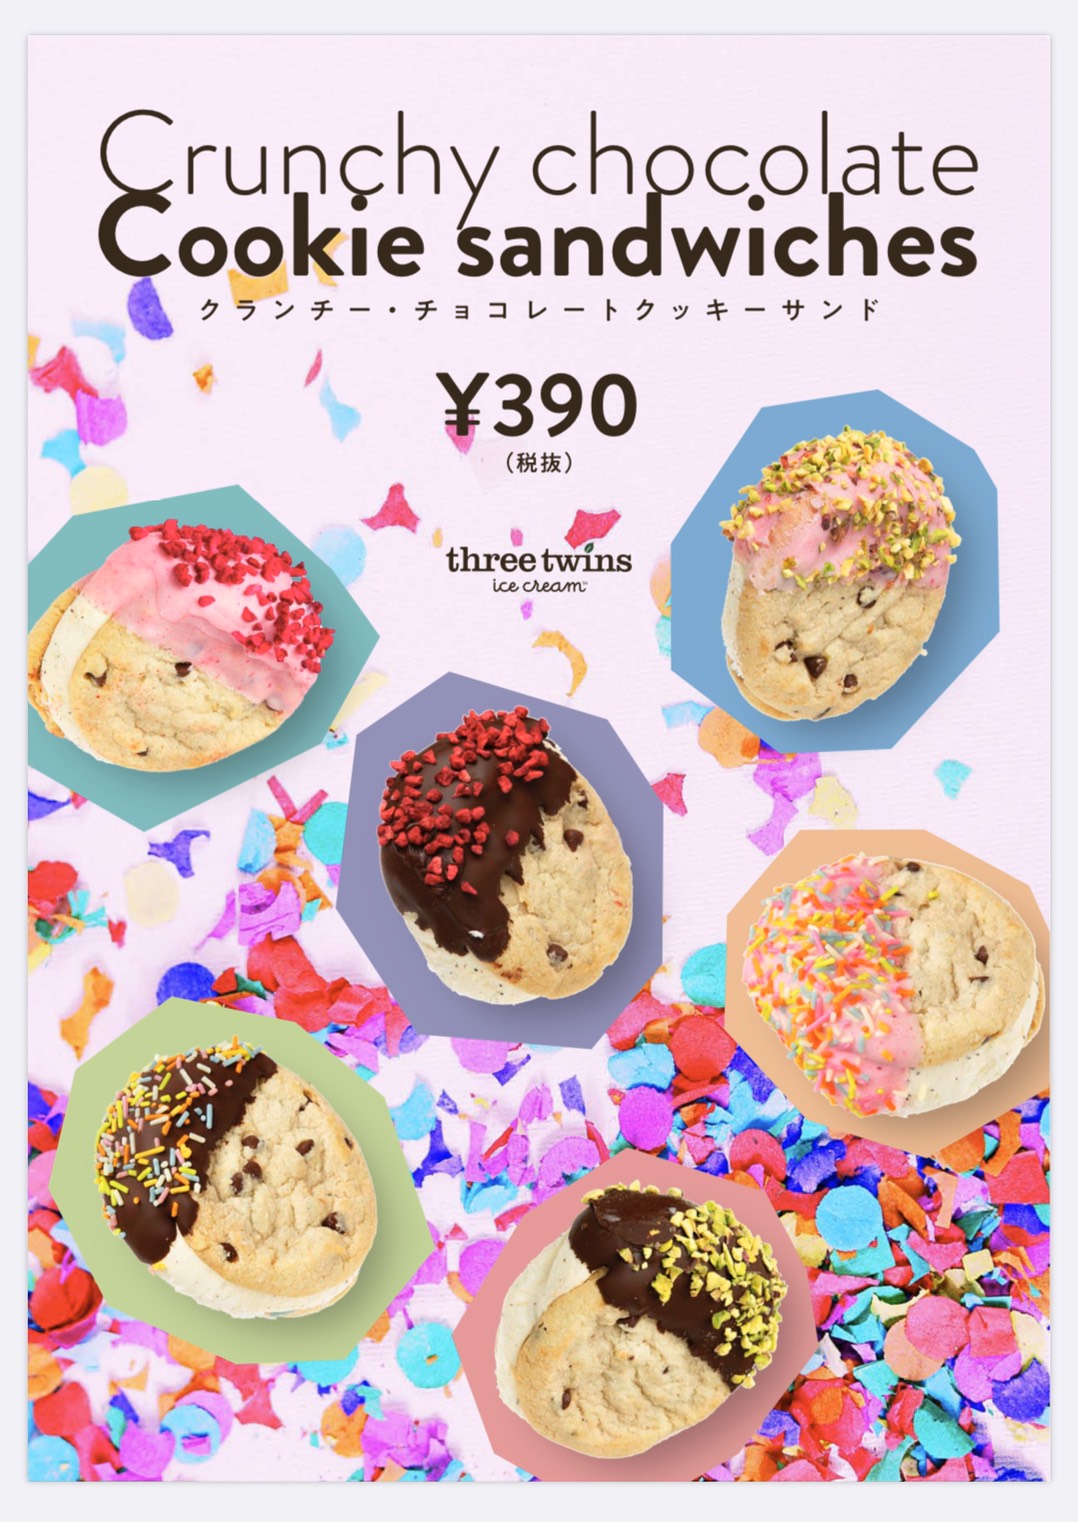 【スリーツインズ アイスクリーム】日本上陸2周年記念🎉ザクザク食感の“クランチー・チョコレートクッキーサンド”が発売🍫💘